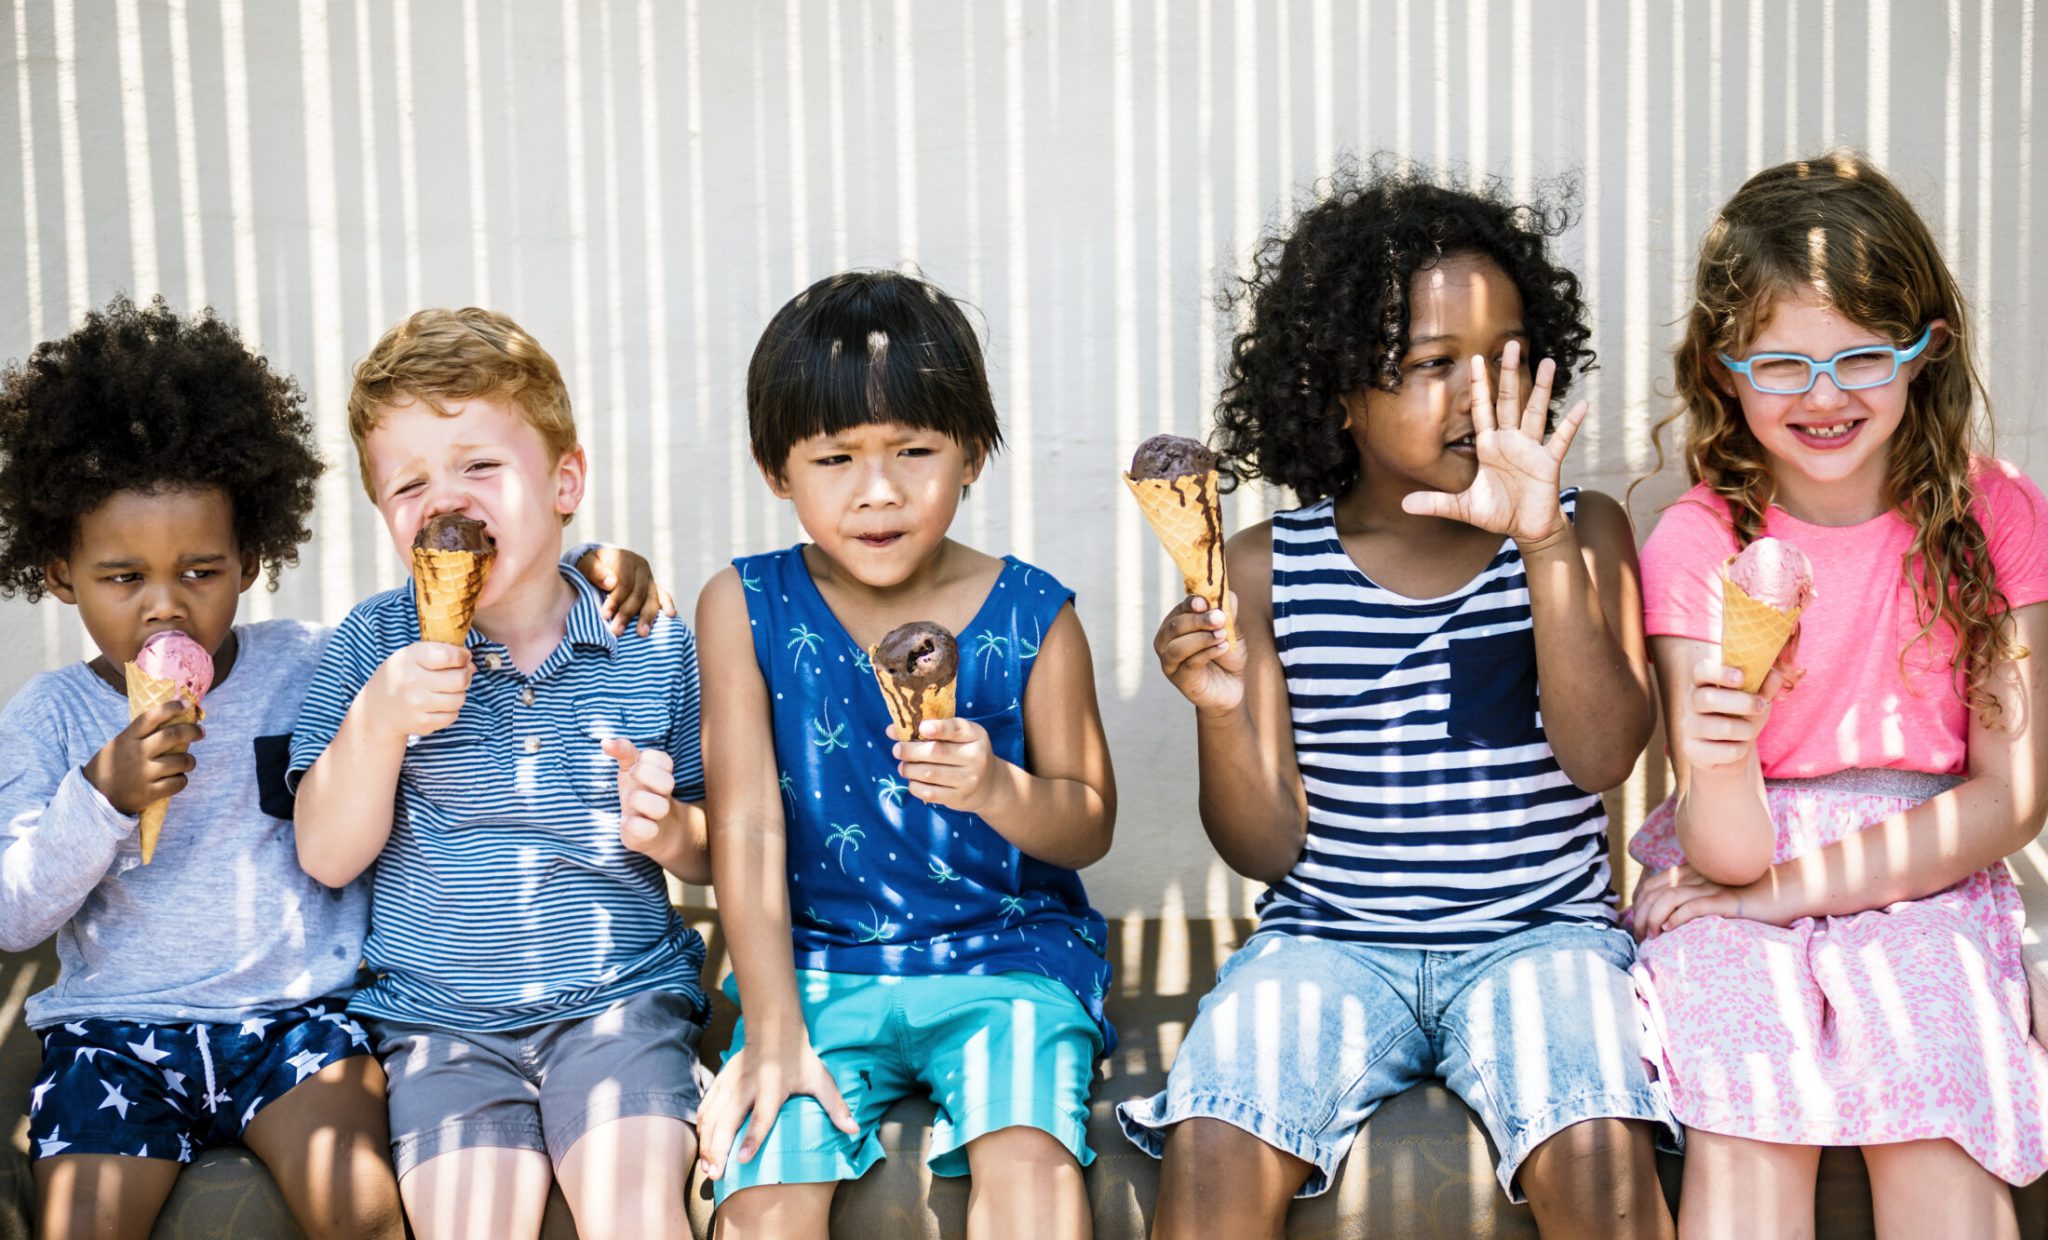 The 5 Stickiest Children of Hyattsville Park Elementary